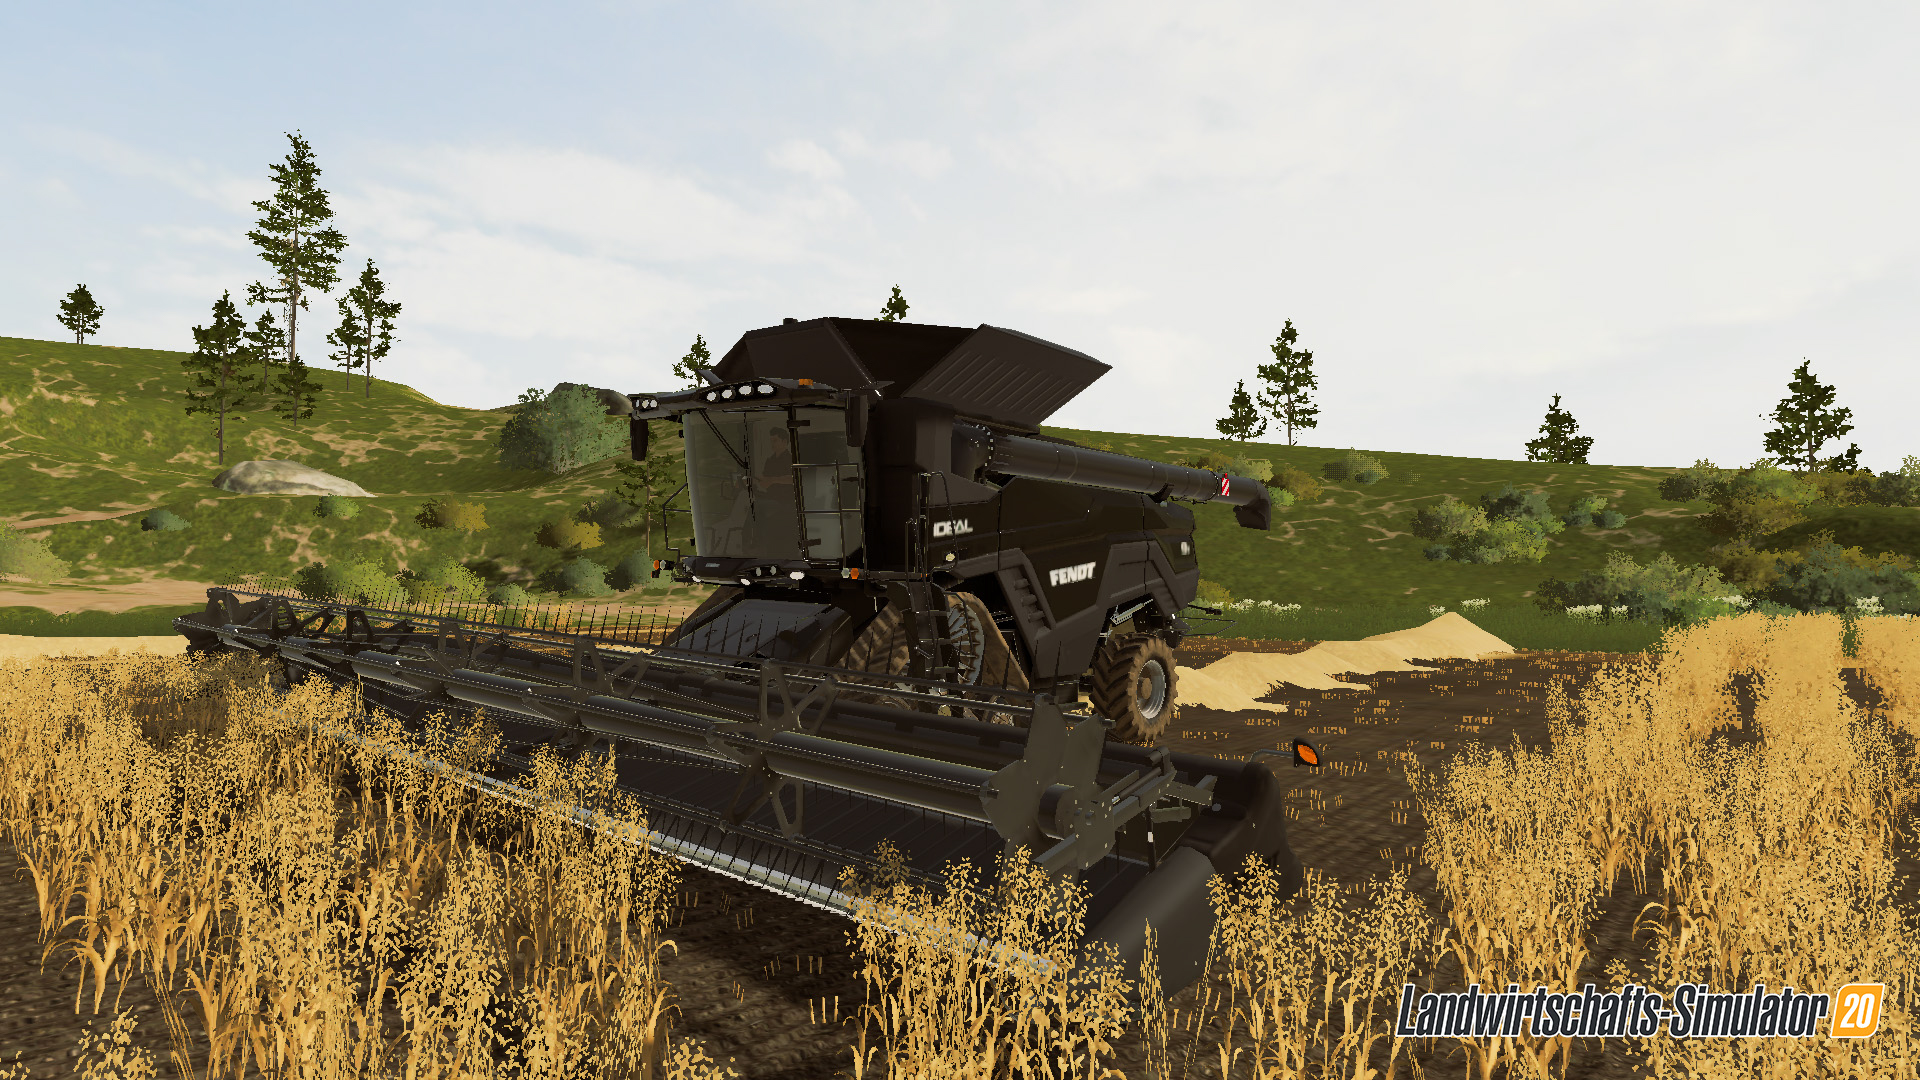 Landwirtschafts-Simulator 20